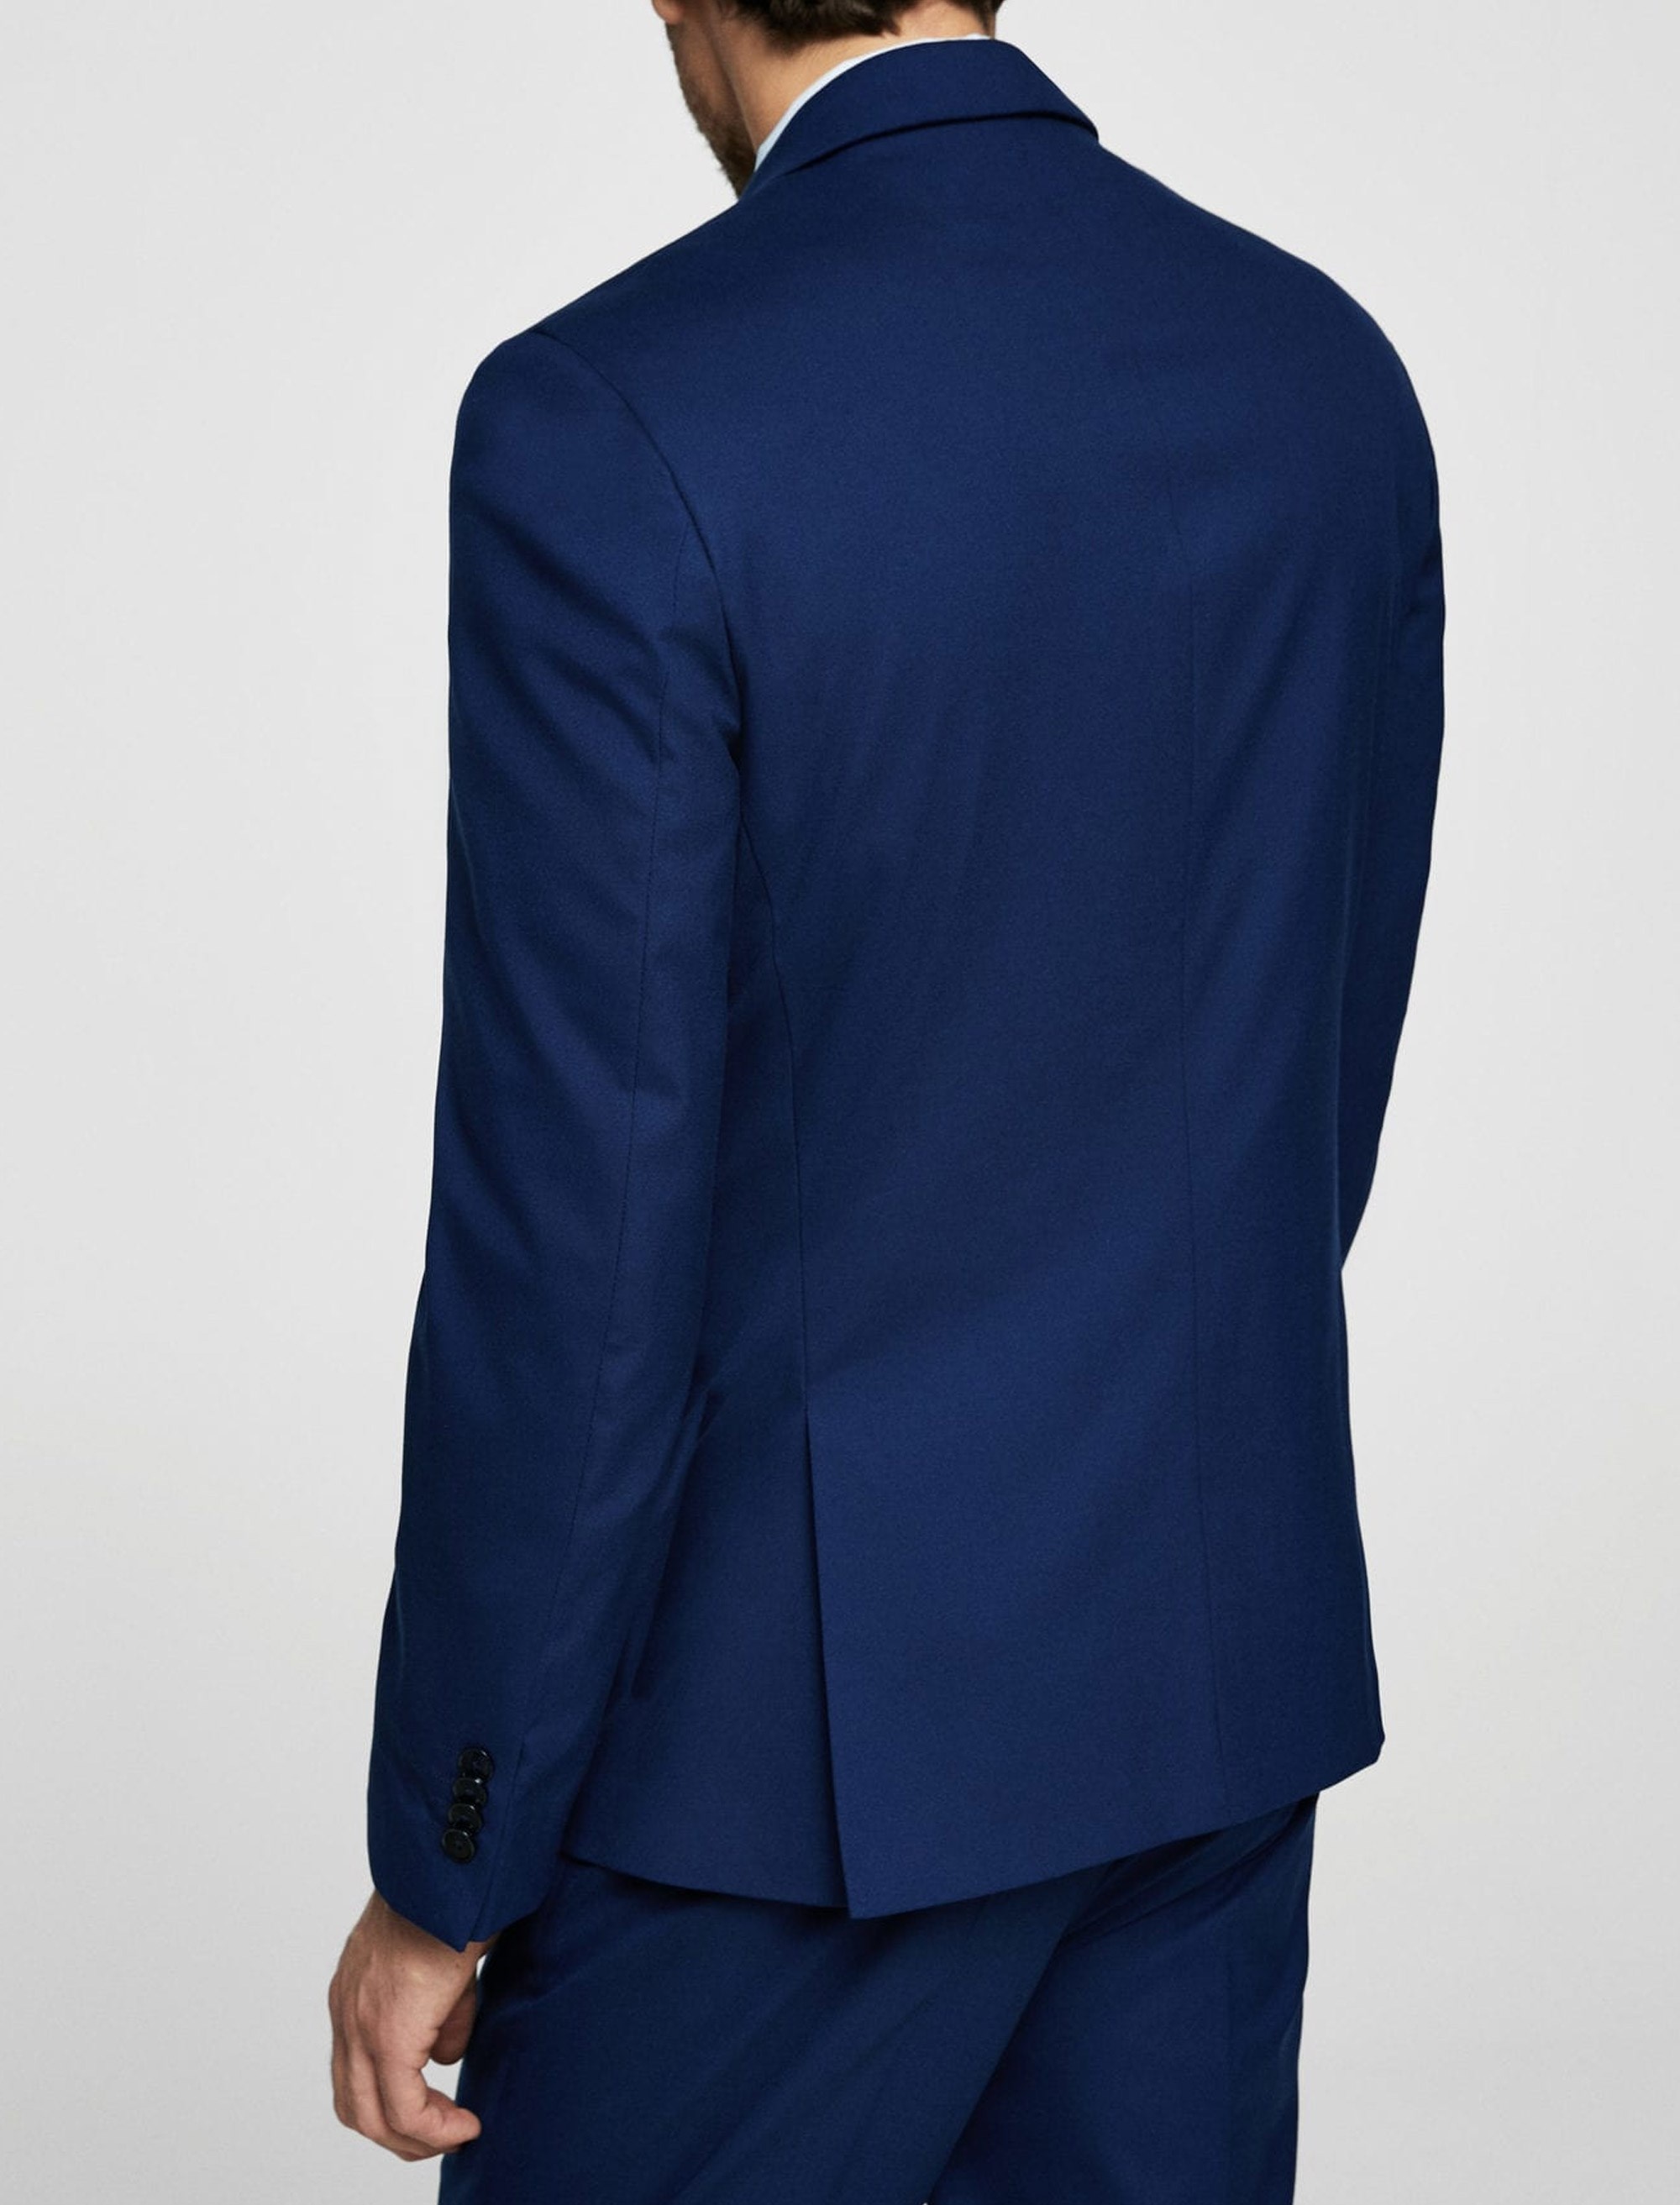 کت تک رسمی مردانه - مانگو - آبي  - 8